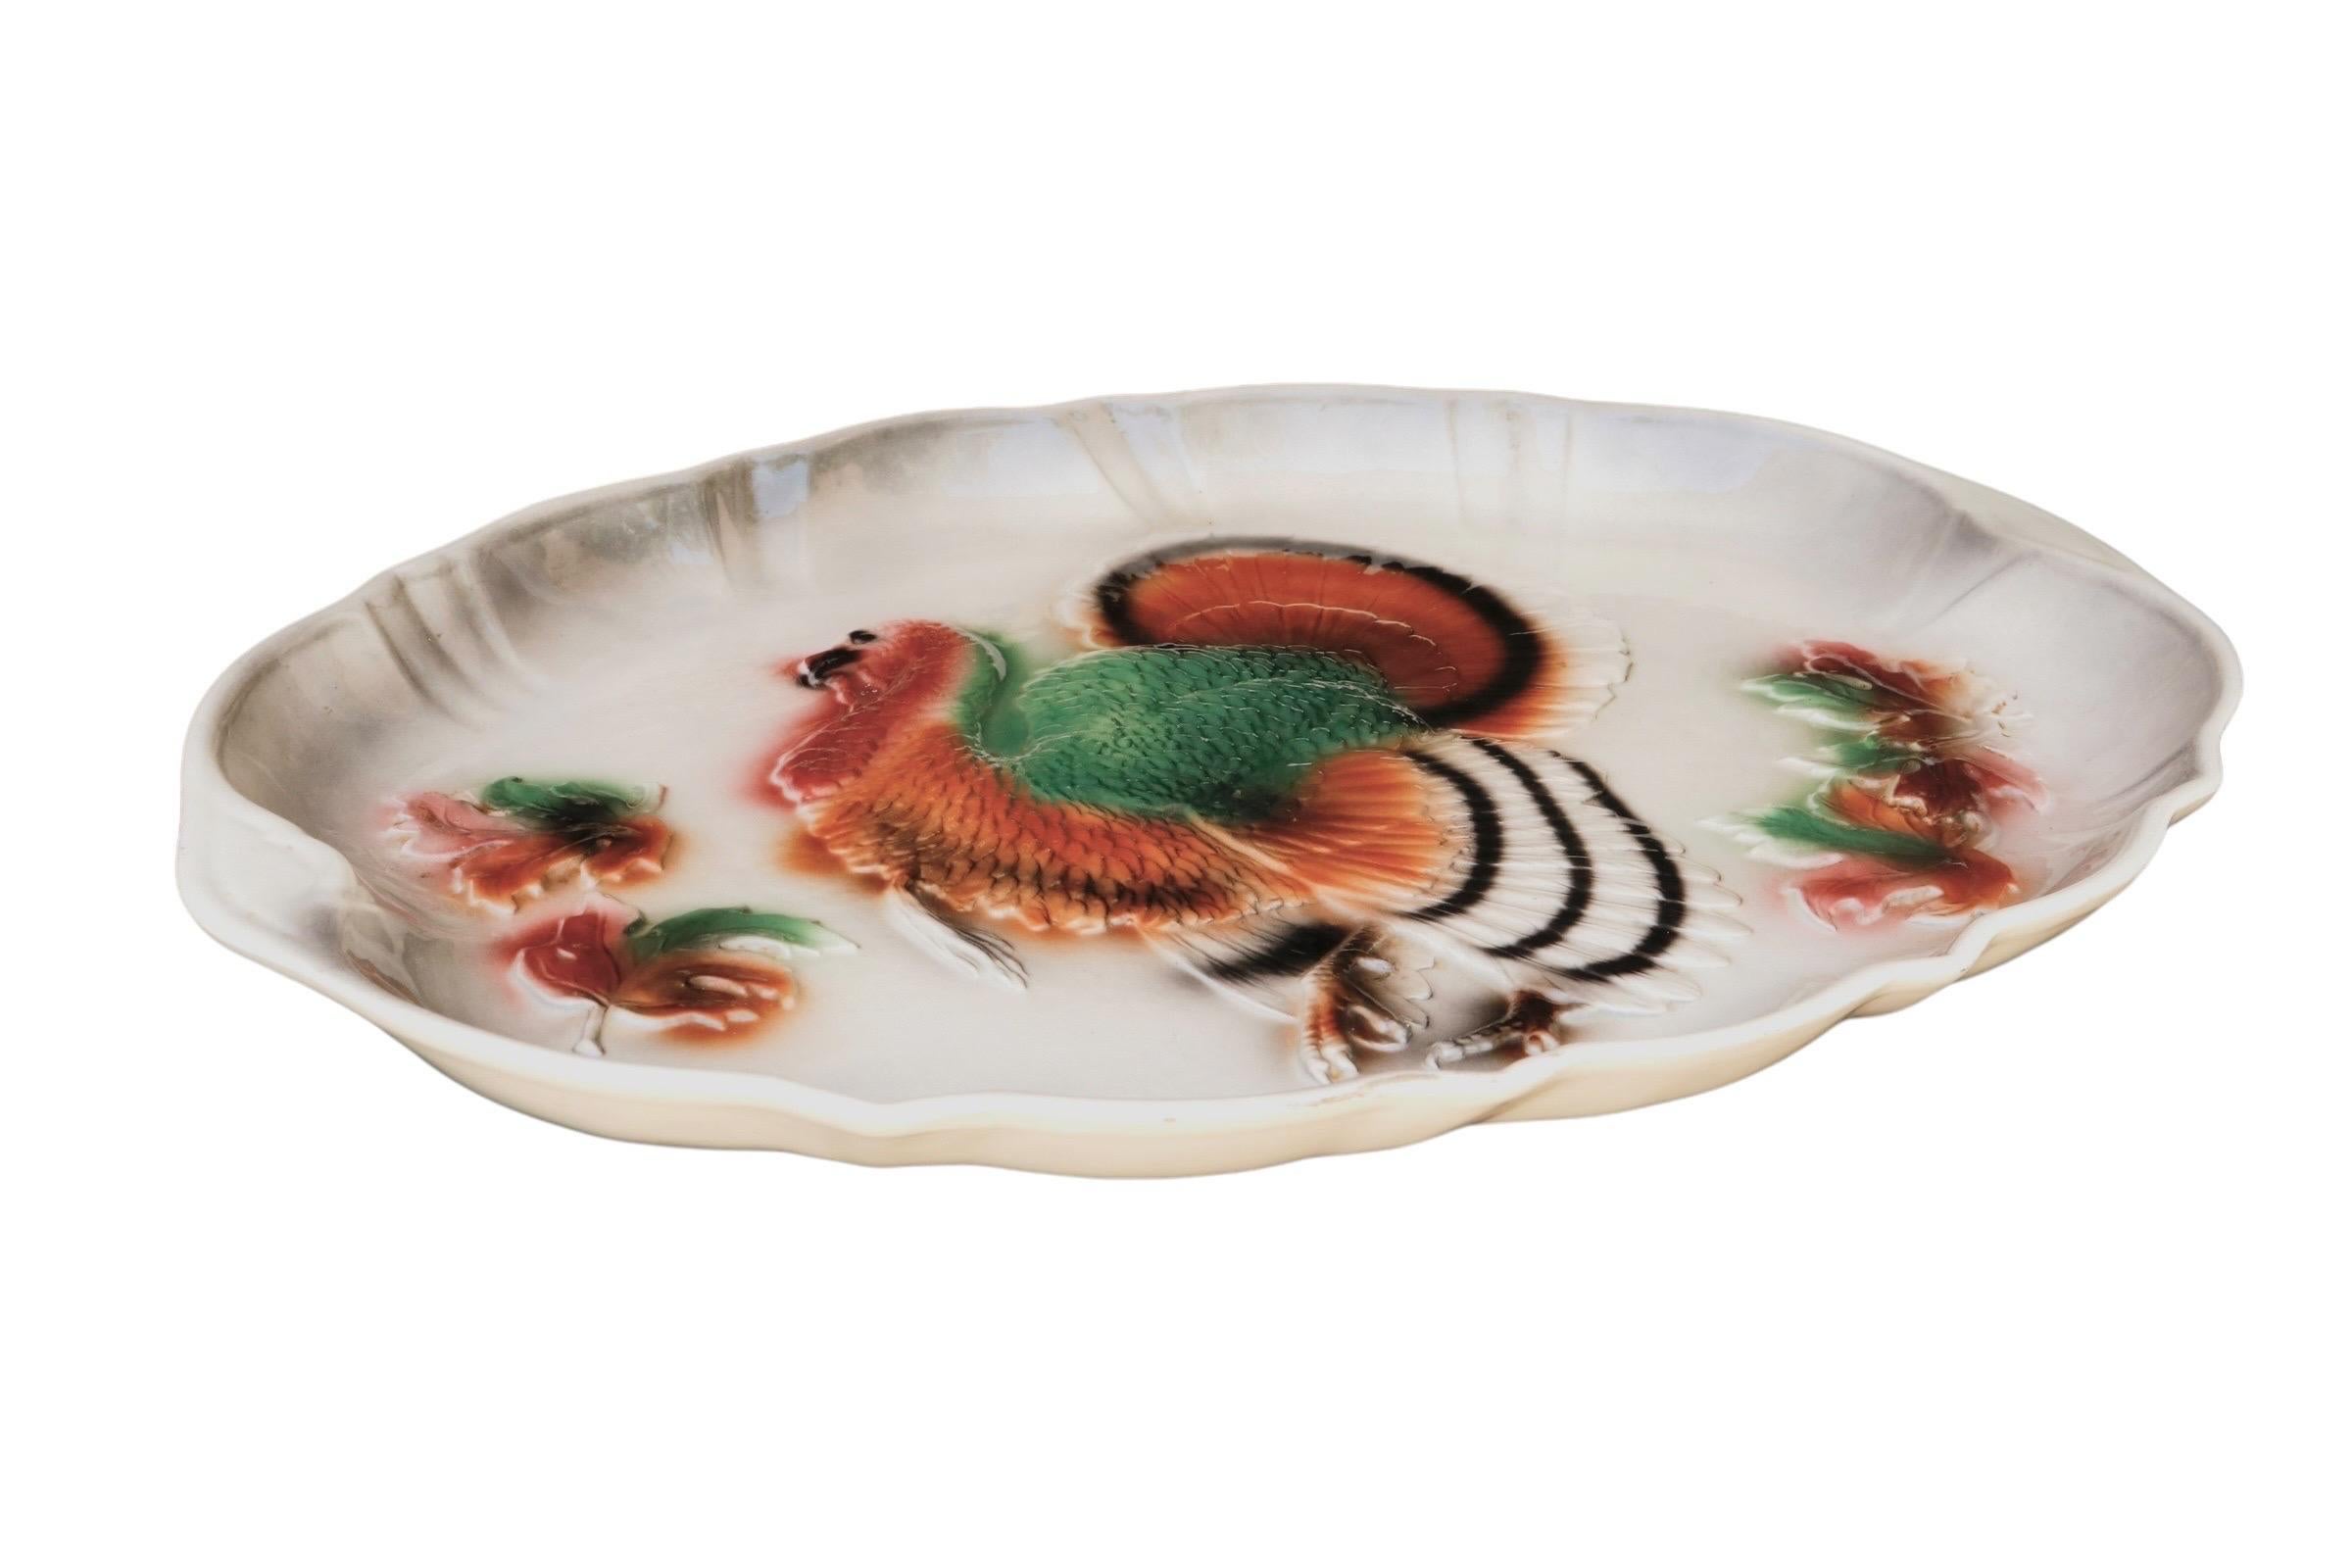 Eine Keramikplatte von 1958, hergestellt von Lane's & Company in Van Nuys, Kalifornien. Die ovale Platte hat einen geprägten Truthahn in der Mitte, mit Herbstblättern auf jeder Seite und einem schlangenförmigen, erhöhten Rand. Airbrush in Braun und